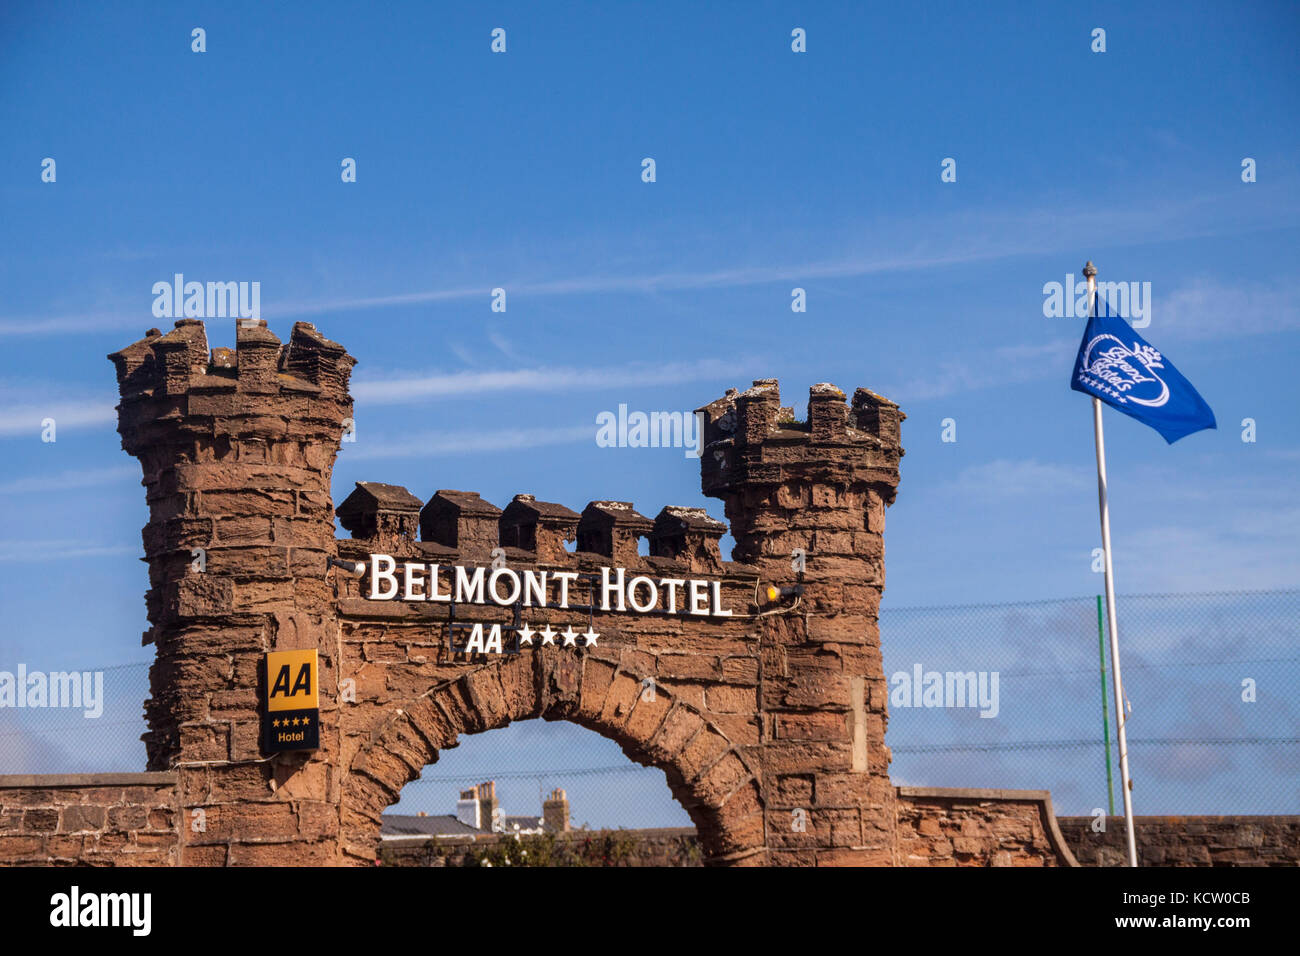 Il Belmont Hotel sul lungomare di Sidmouth, uno dei Brend group hotels. Foto Stock